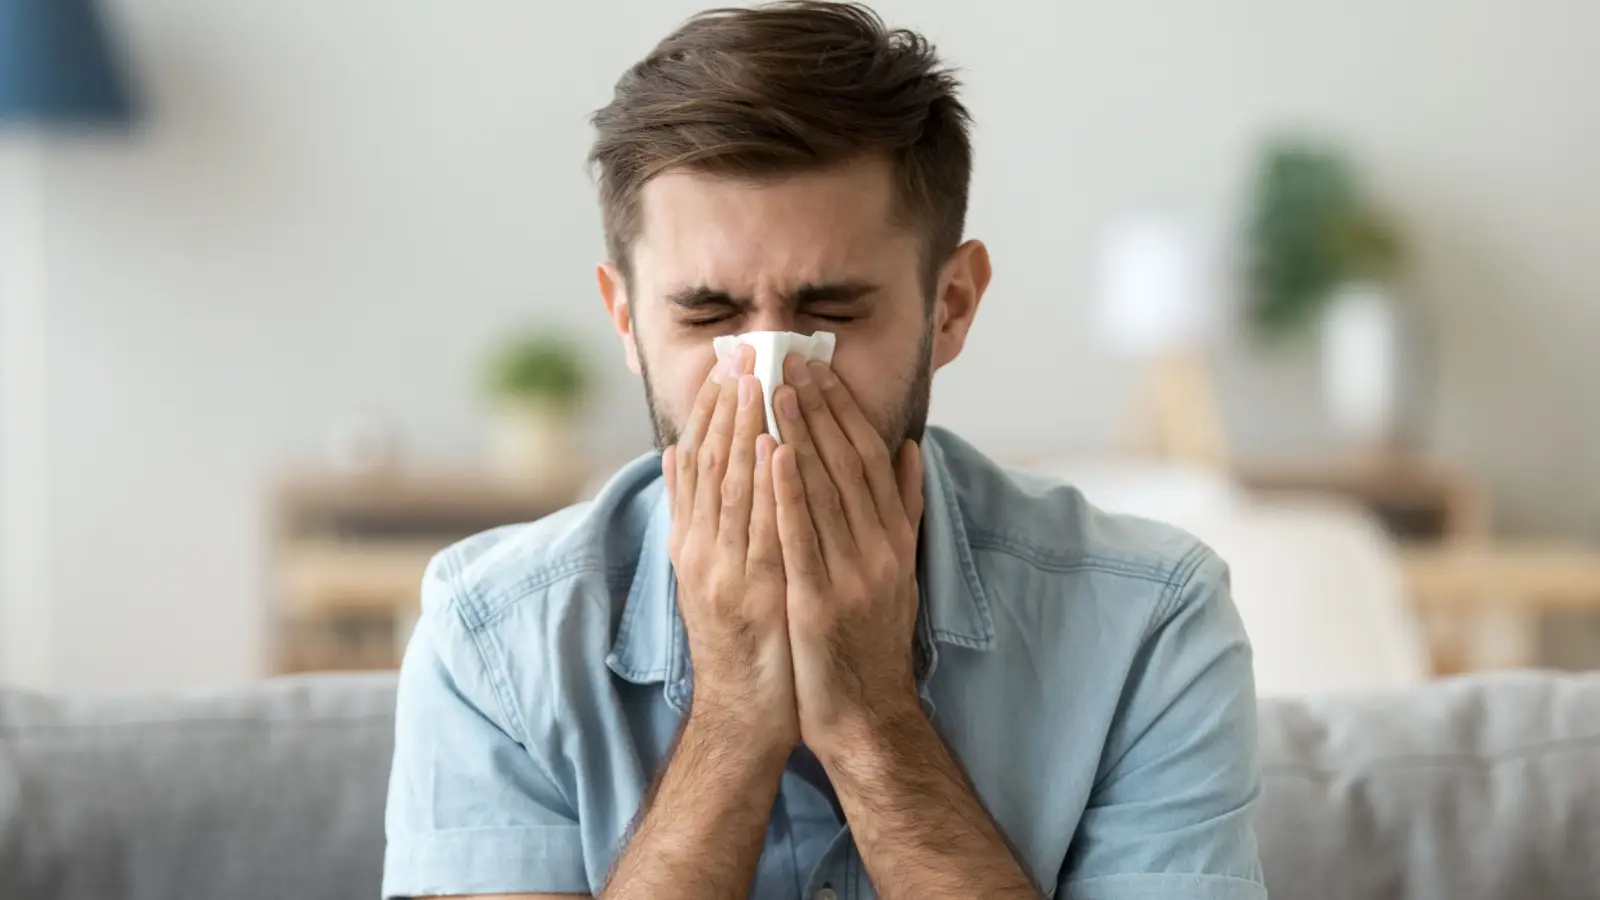 ما أعراض الانفلونزا الموسمية وكيف يمكن علاجها؟ ما أعراض الانفلونزا الموسمية وكيف يمكن علاجها؟